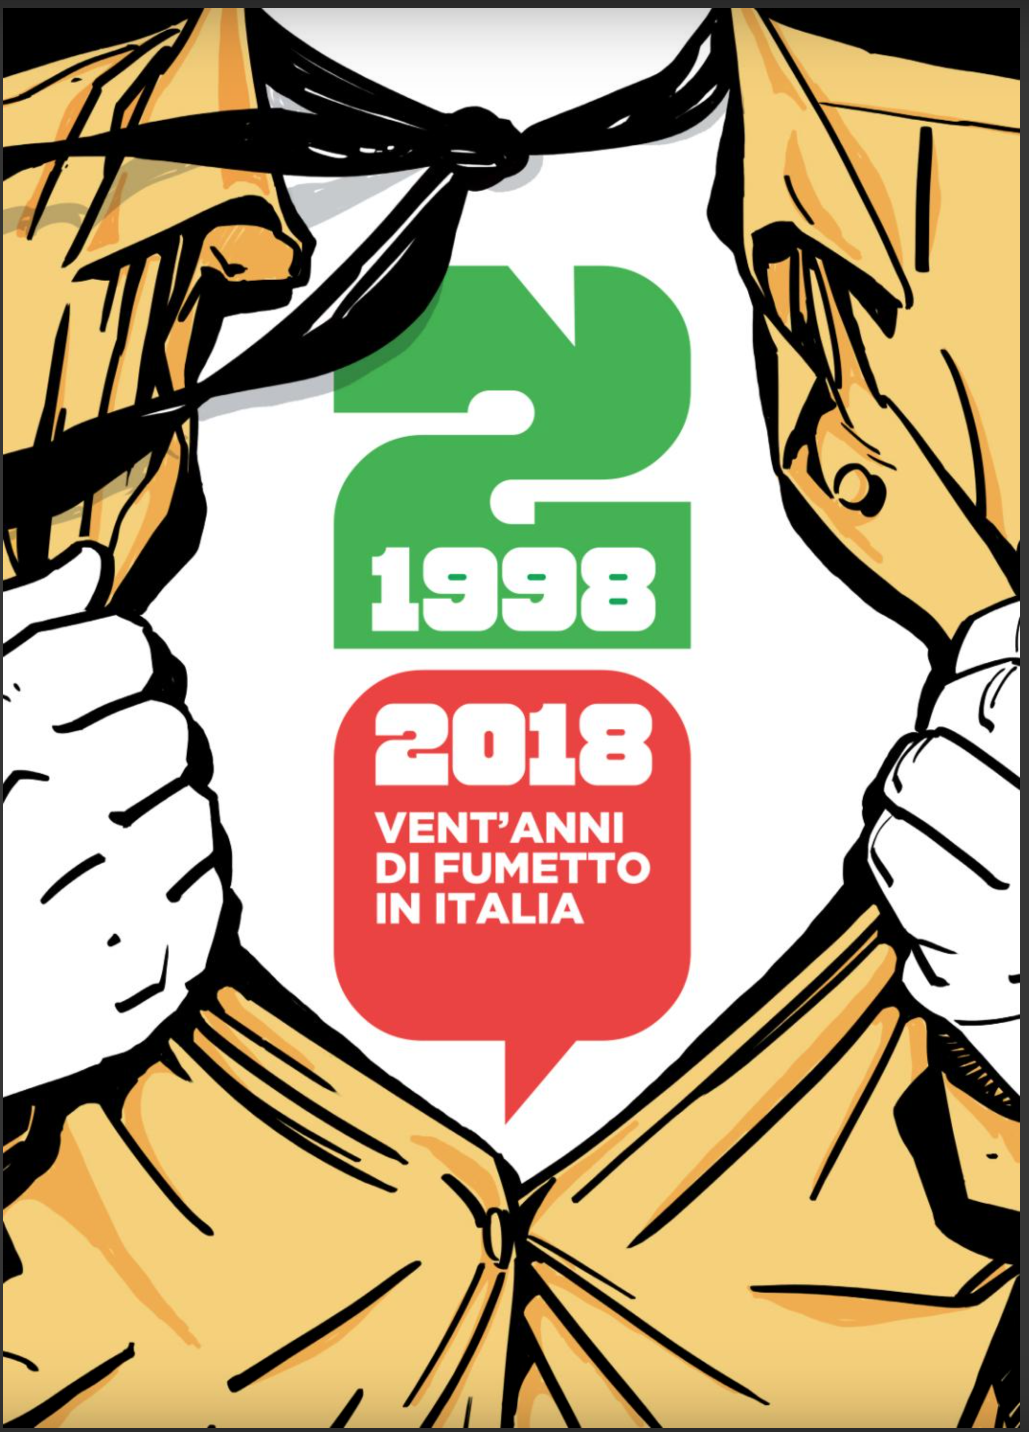 La cover del libro che celebra i venti anni della nona arte in Italia